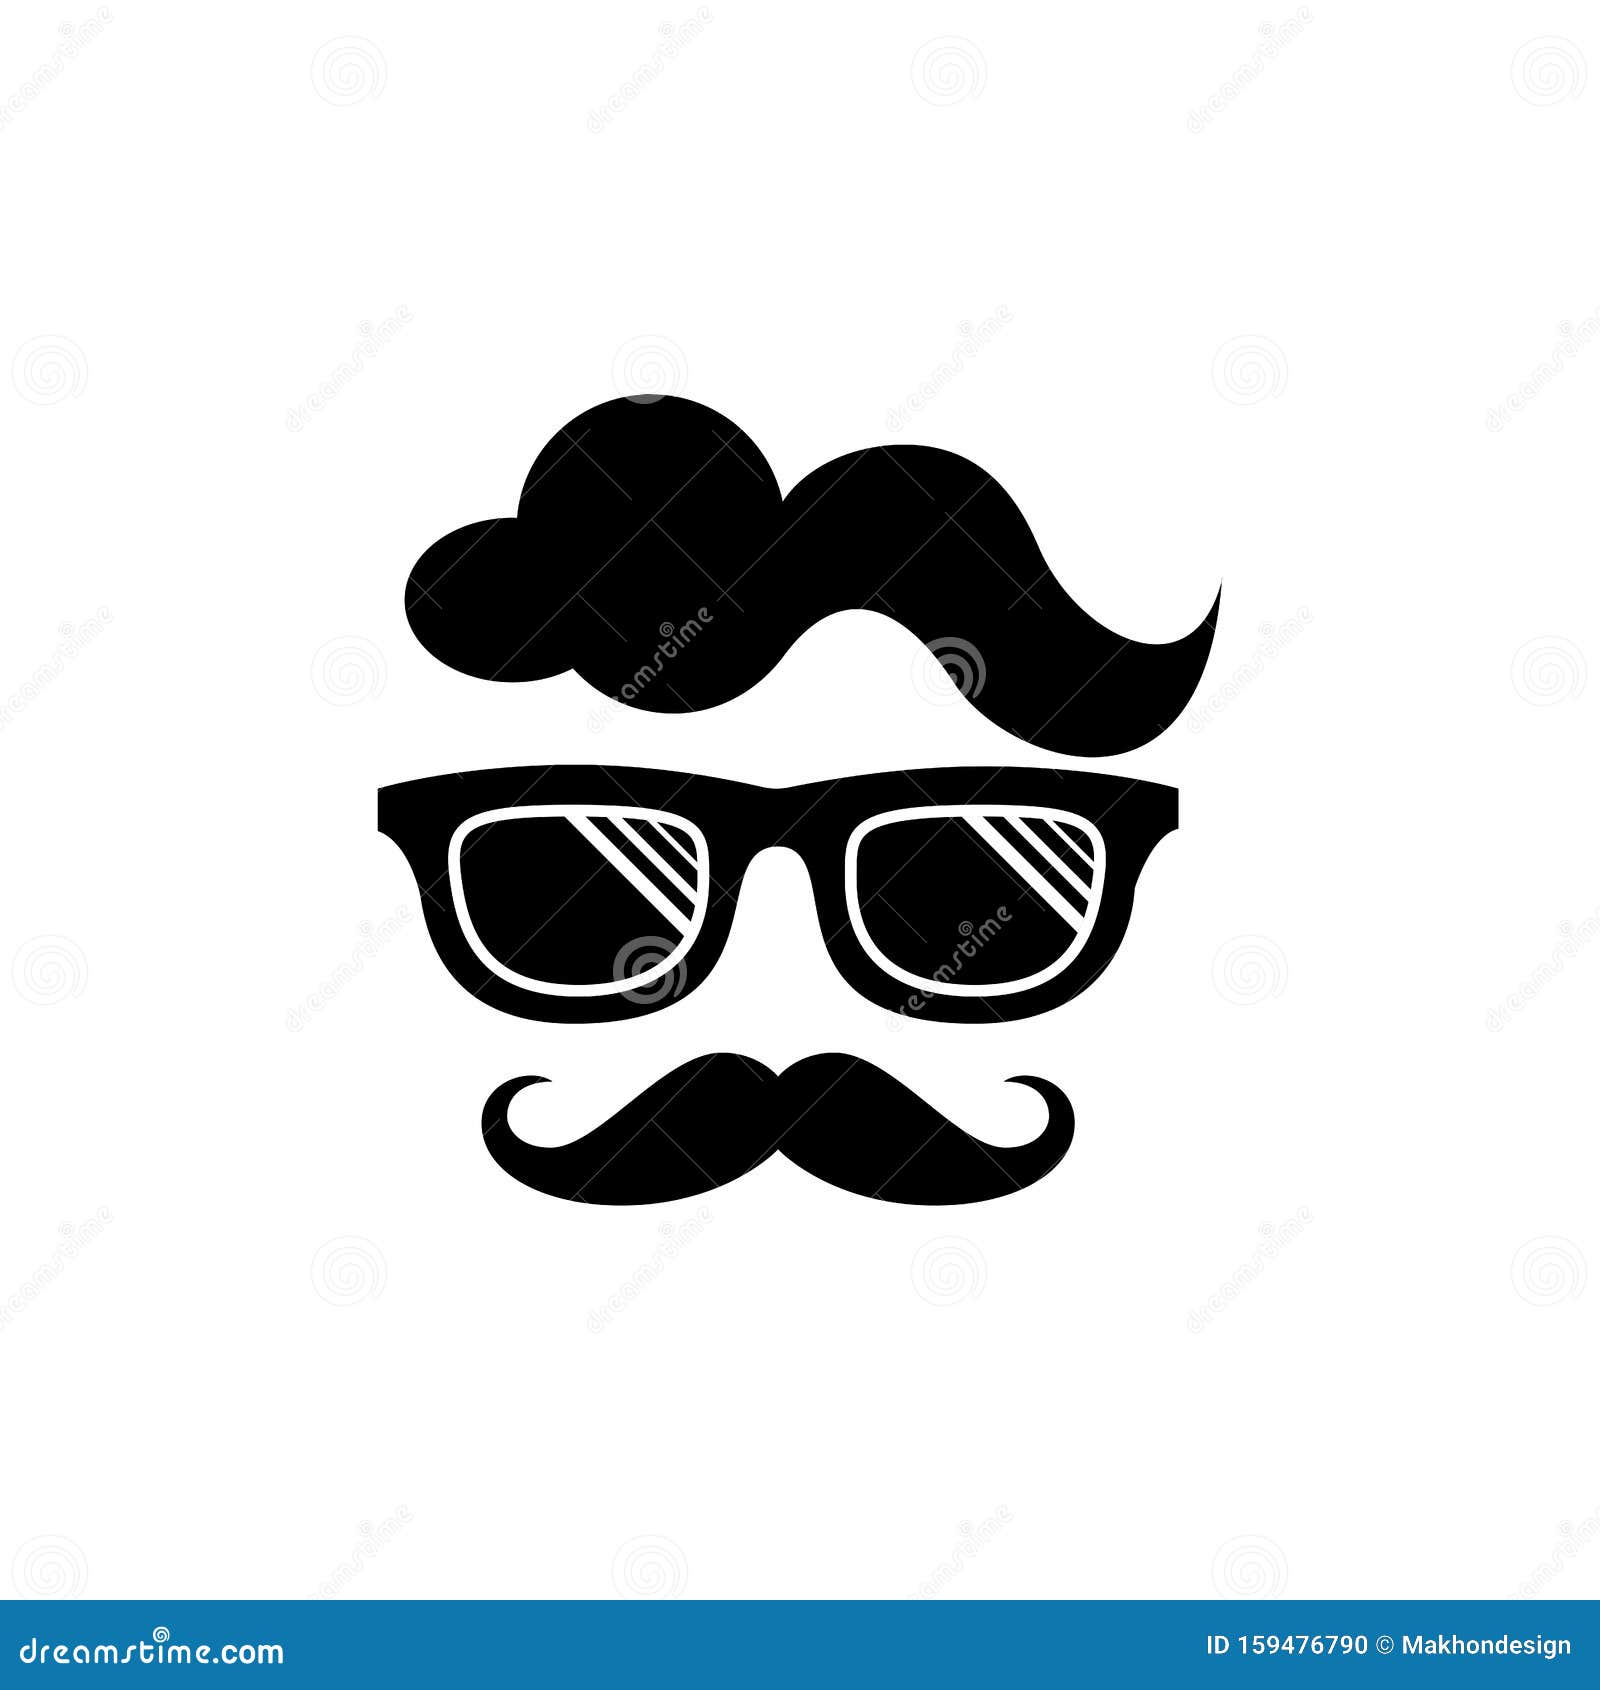 Download Cool Geek Guy Nerd Vector Logo Design Stock Vector ...